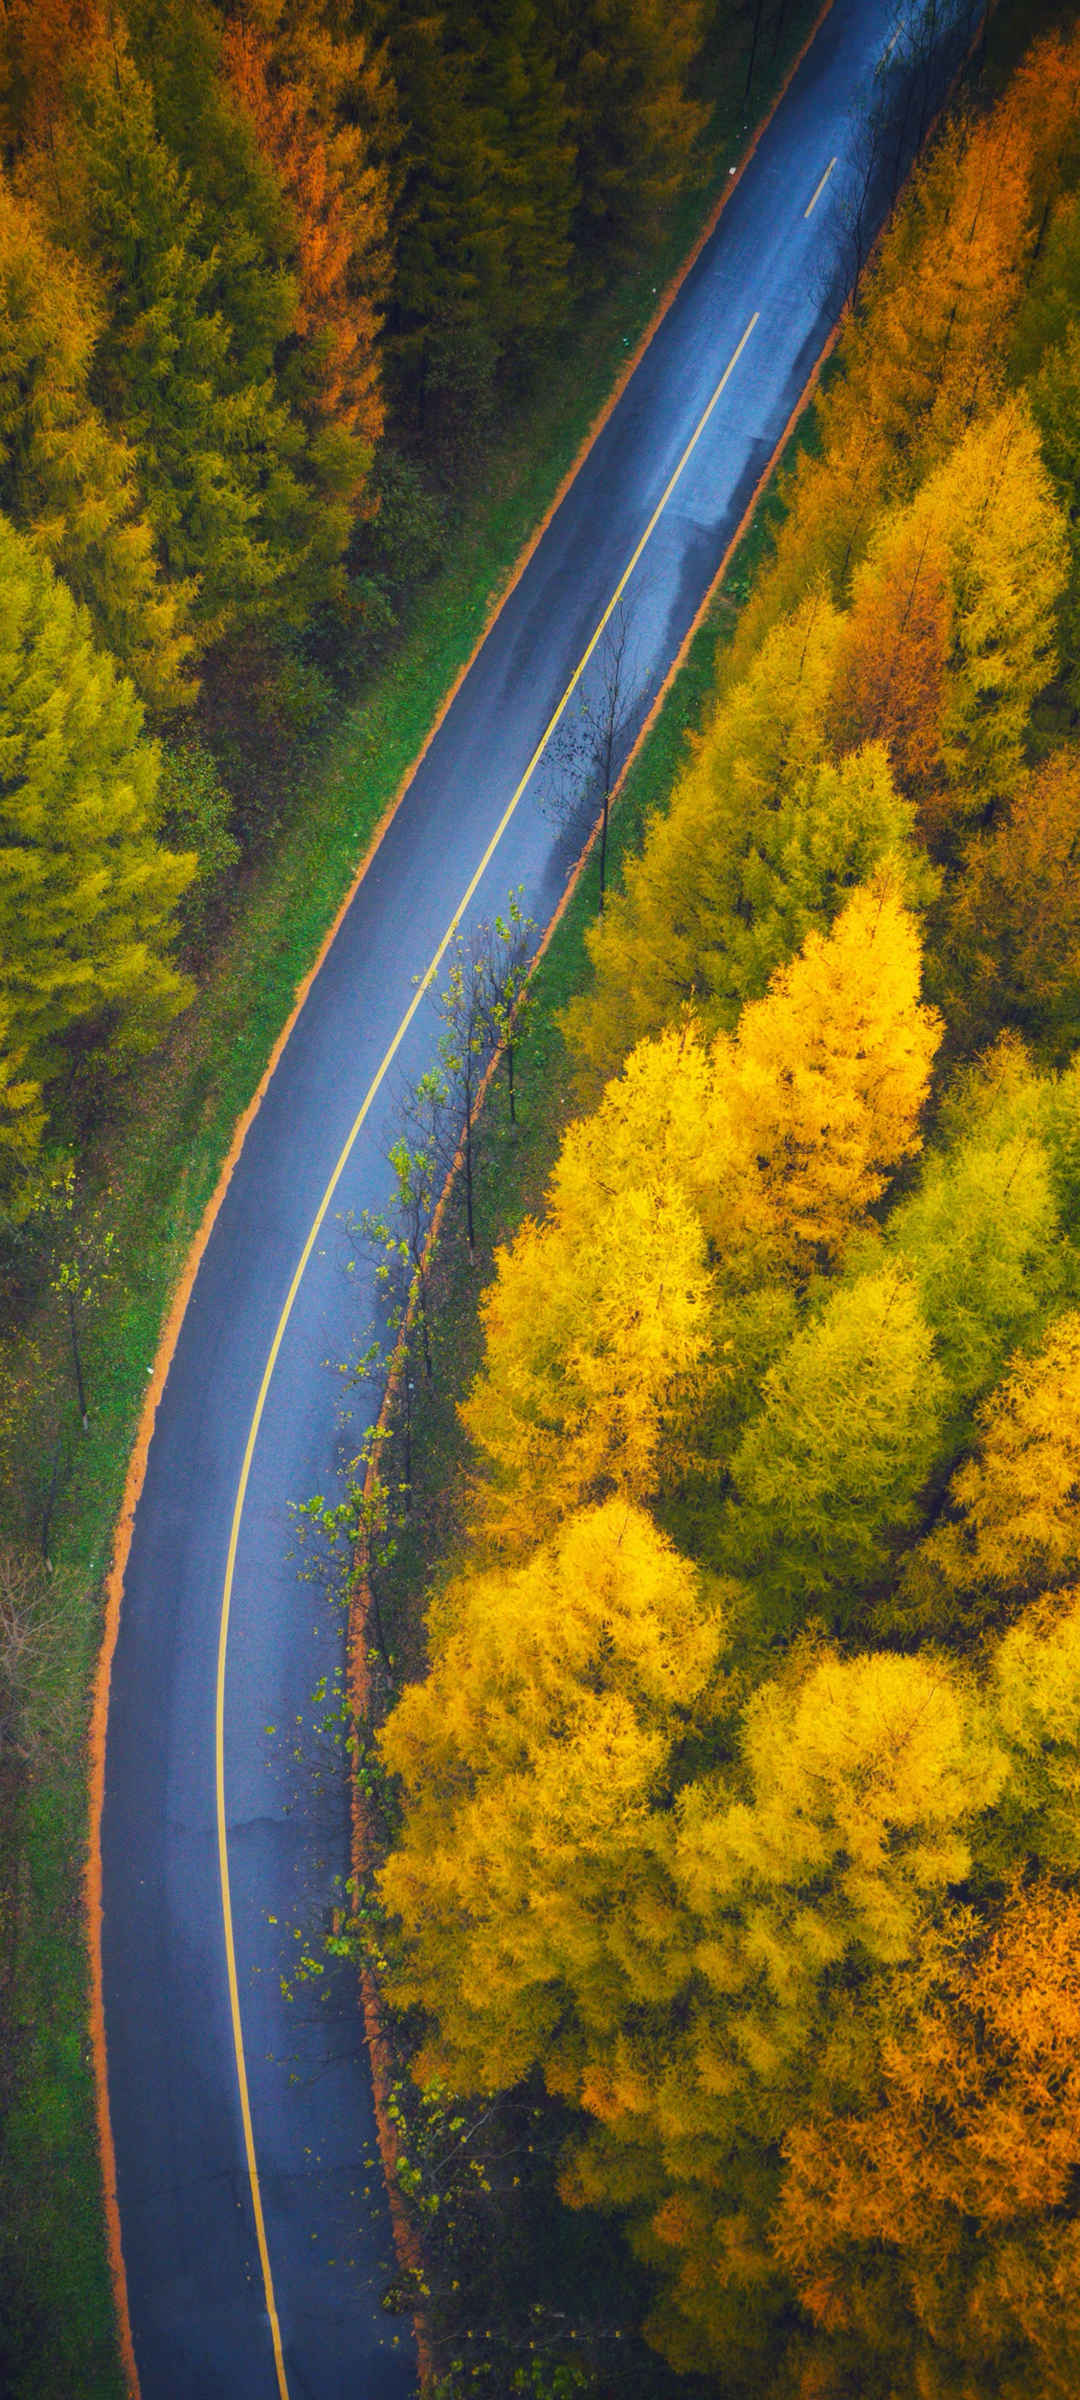 俯视 秋季 森林 美丽 公路风景 壁纸-